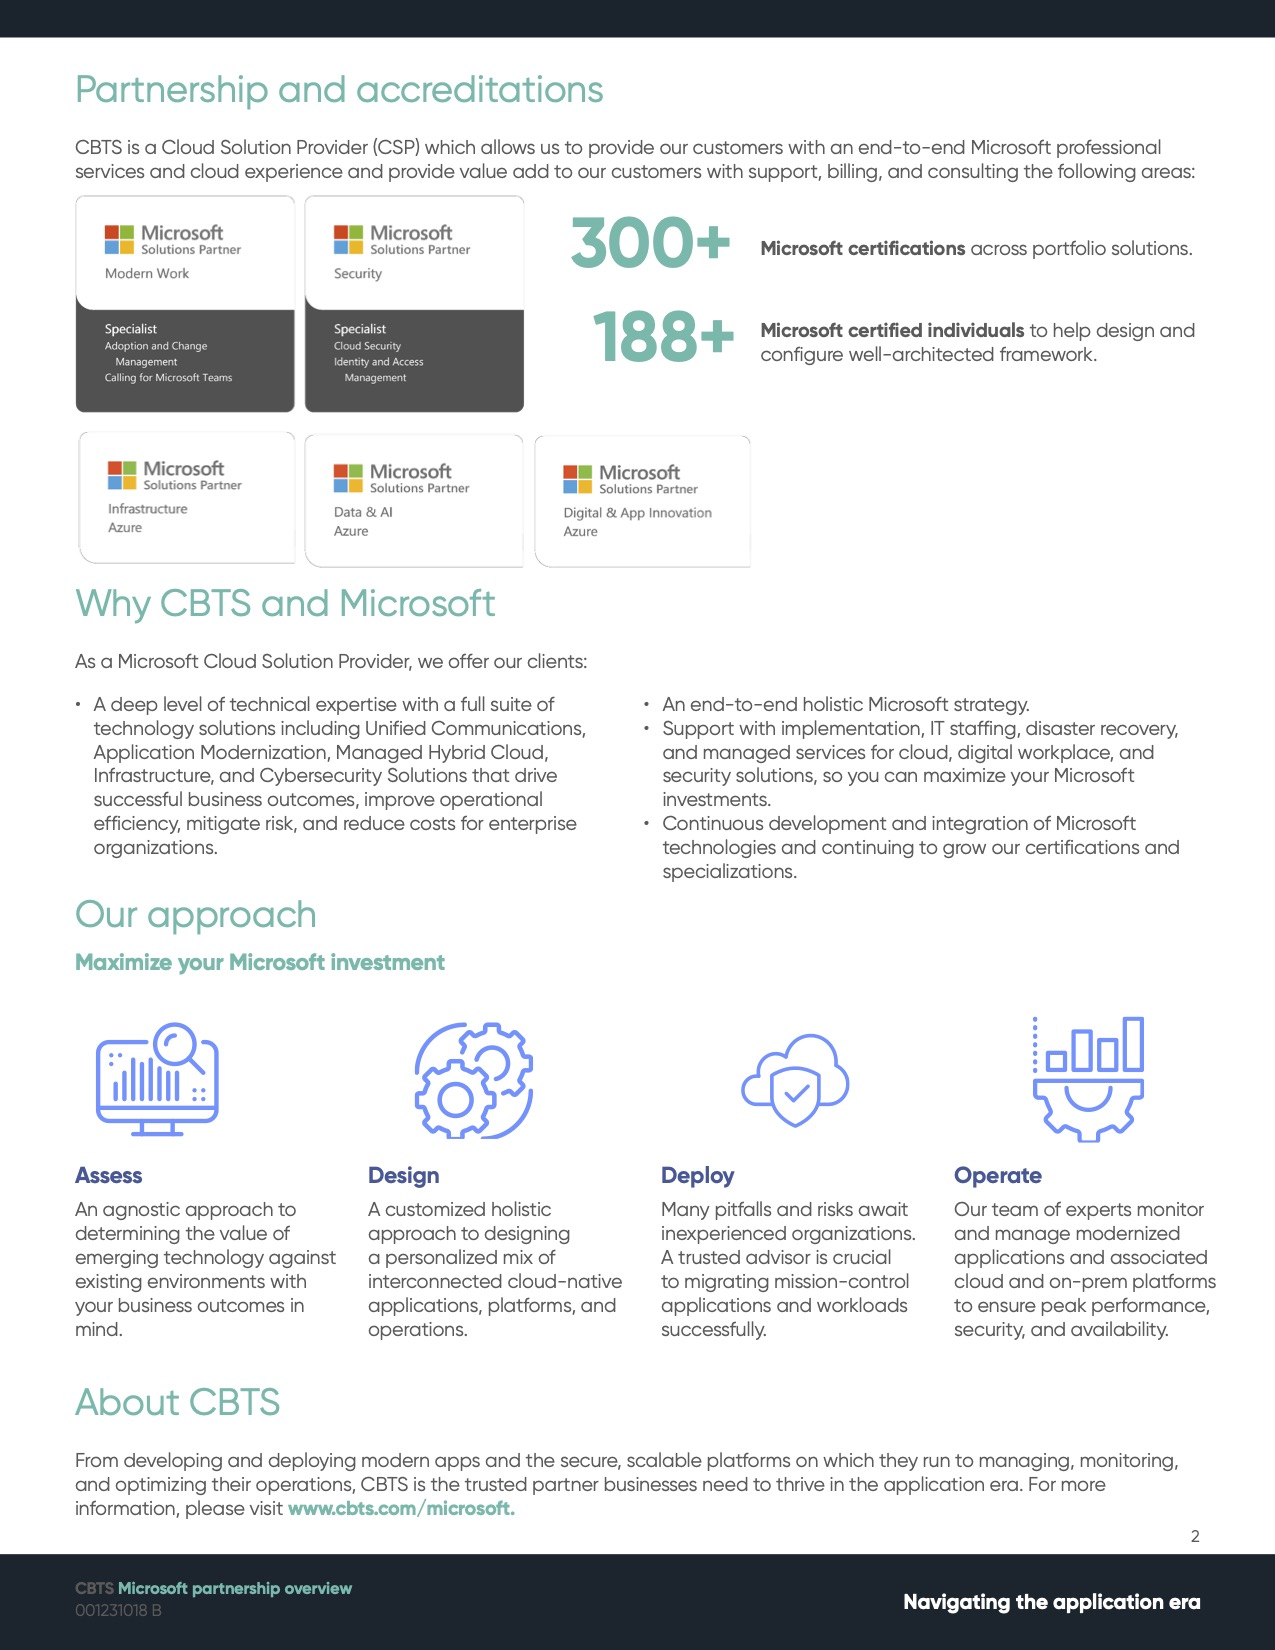 CBTS_Microsoft_Partnership_02